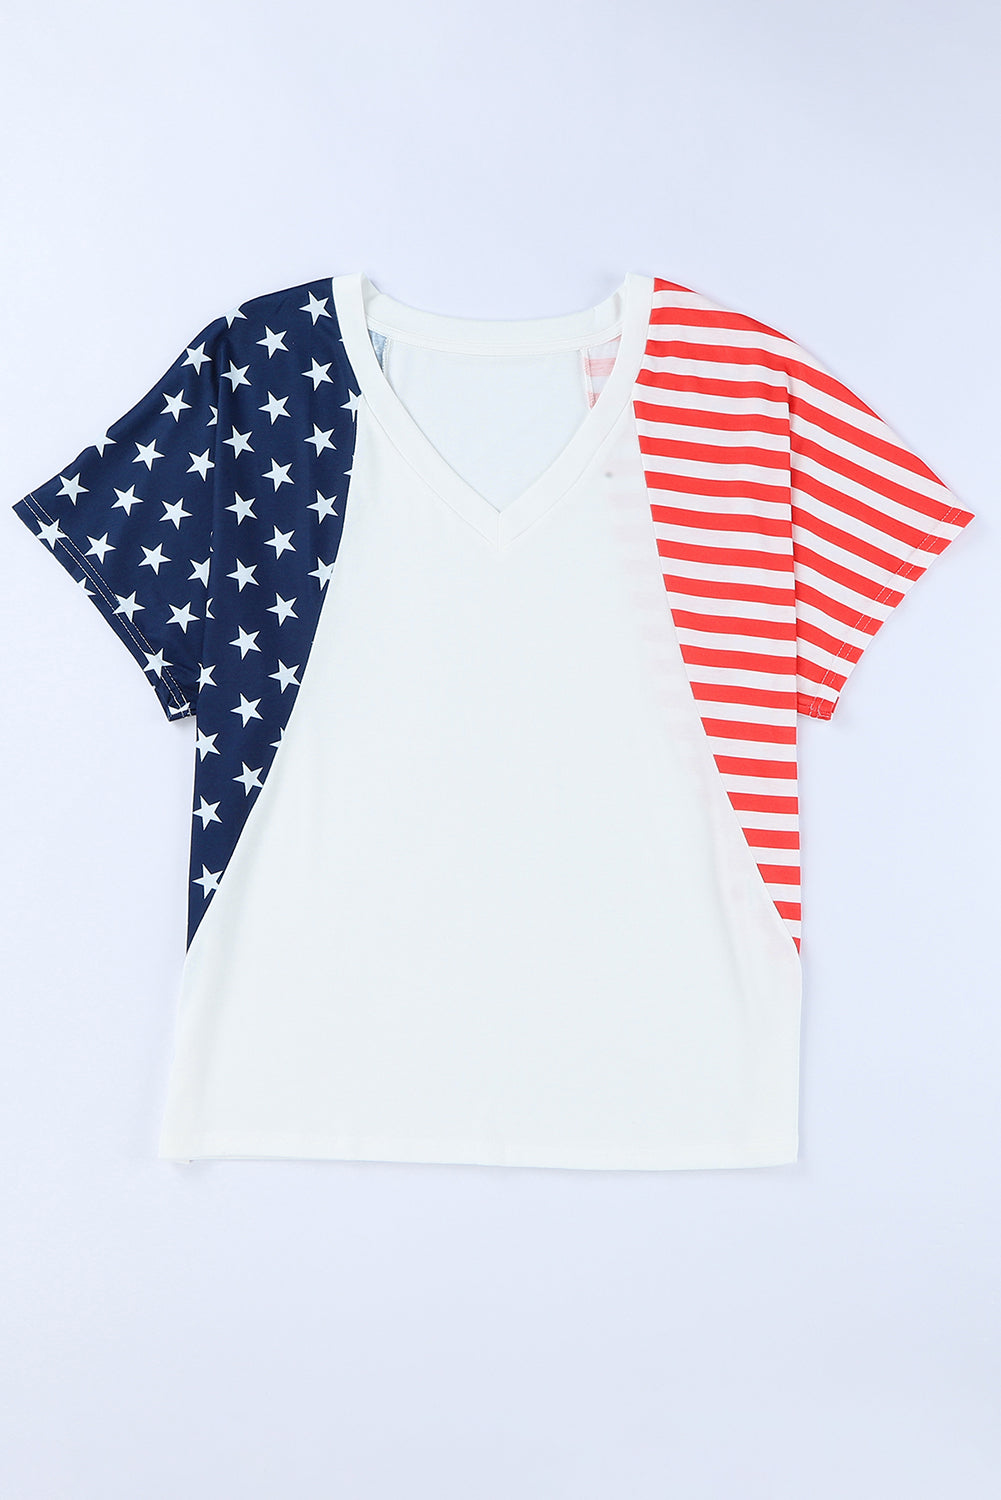 Maglietta bianca con scollo a V a stelle e strisce degli Stati Uniti